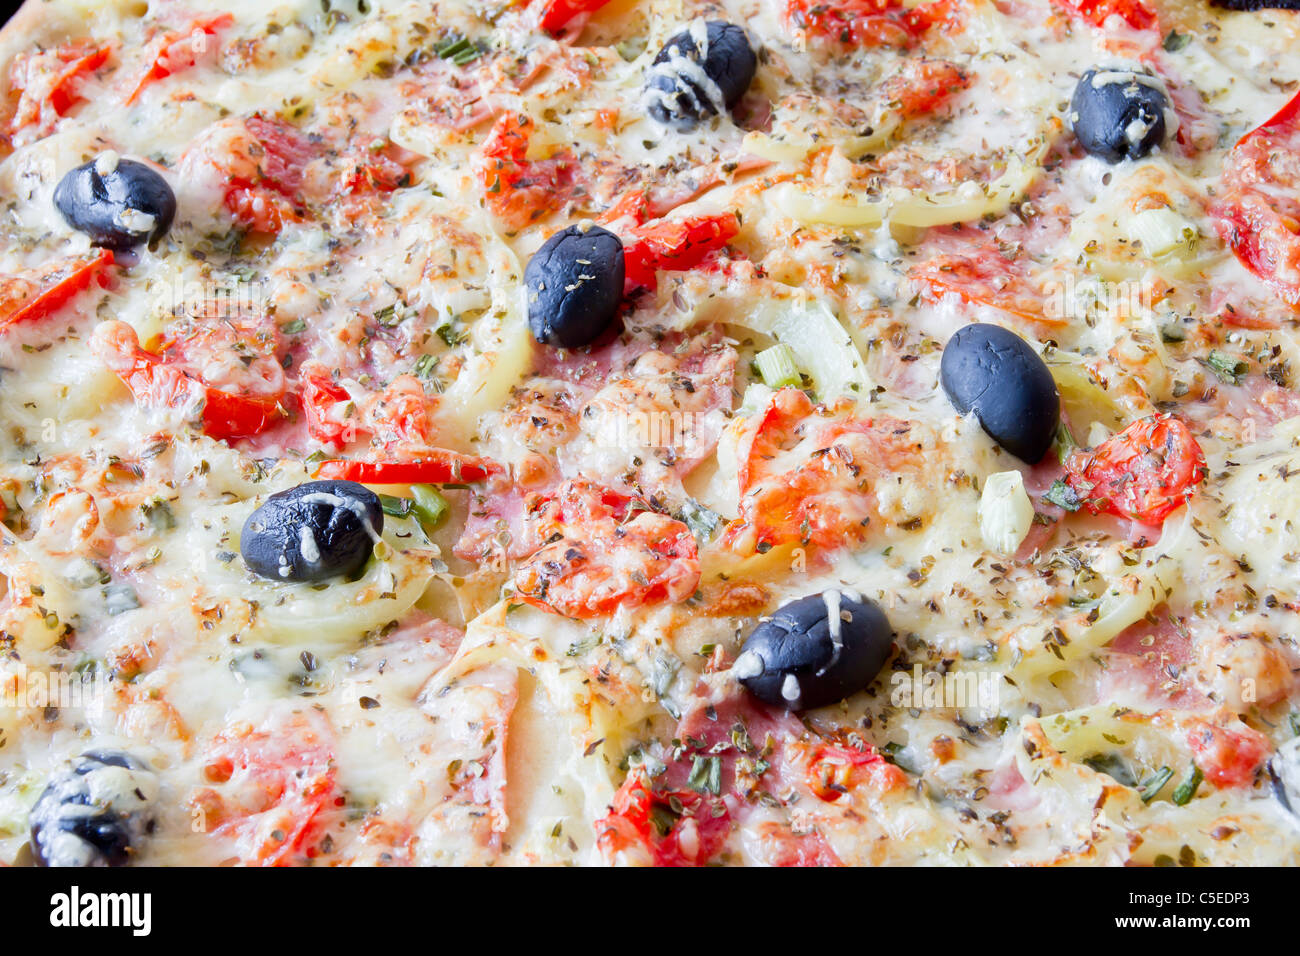 Pizza au fromage mozzarella et tomates fraîches et sauce pesto. Garnir de tomates séchées, olives vertes et noires et basilic Lea Banque D'Images